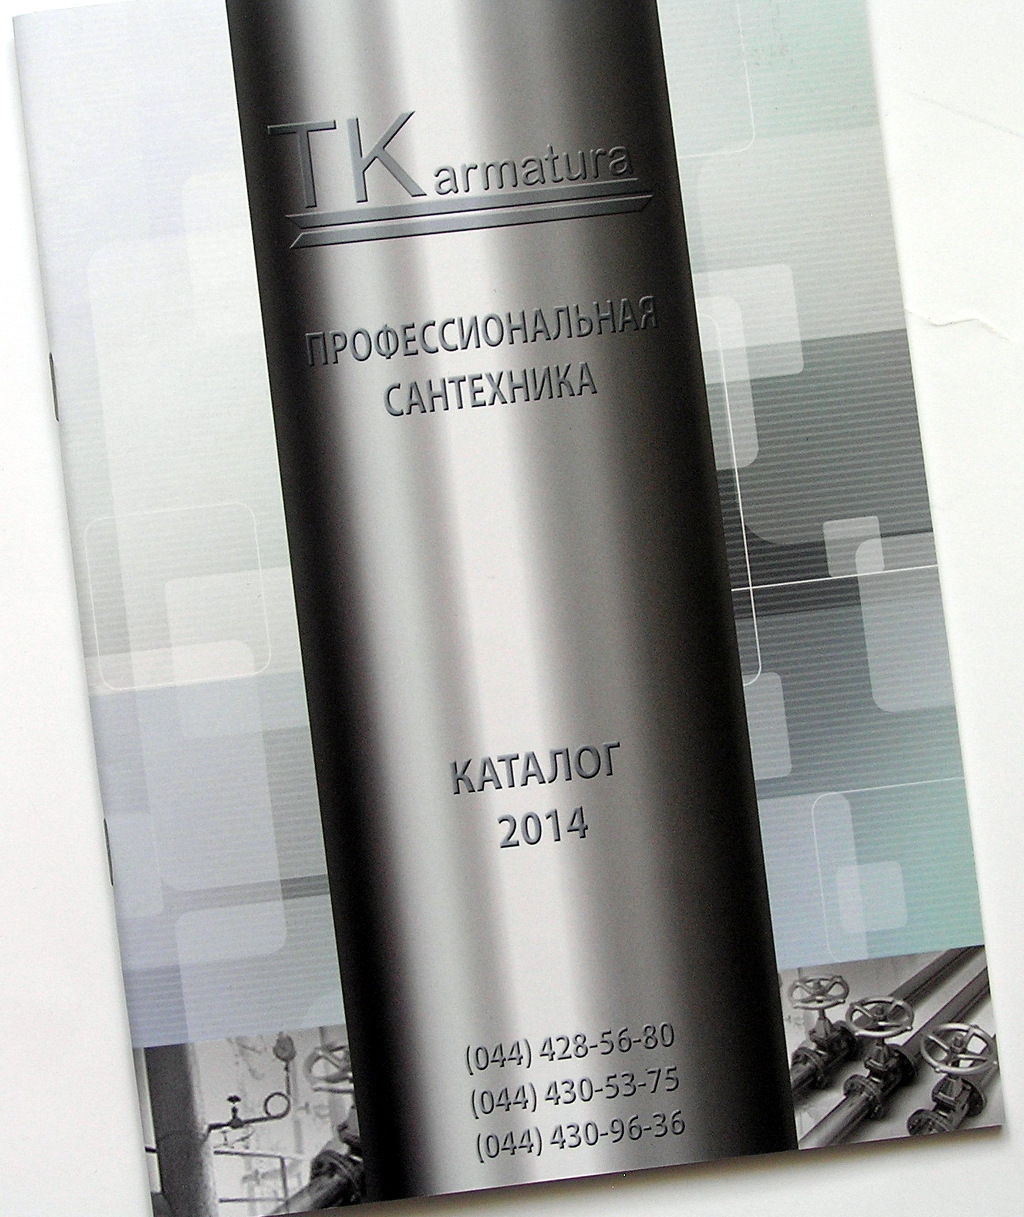 Друк каталогів «TKarmatura. 2014». Поліграфія друкарні Макрос, виготовлення каталогів, специфікація 964968-1